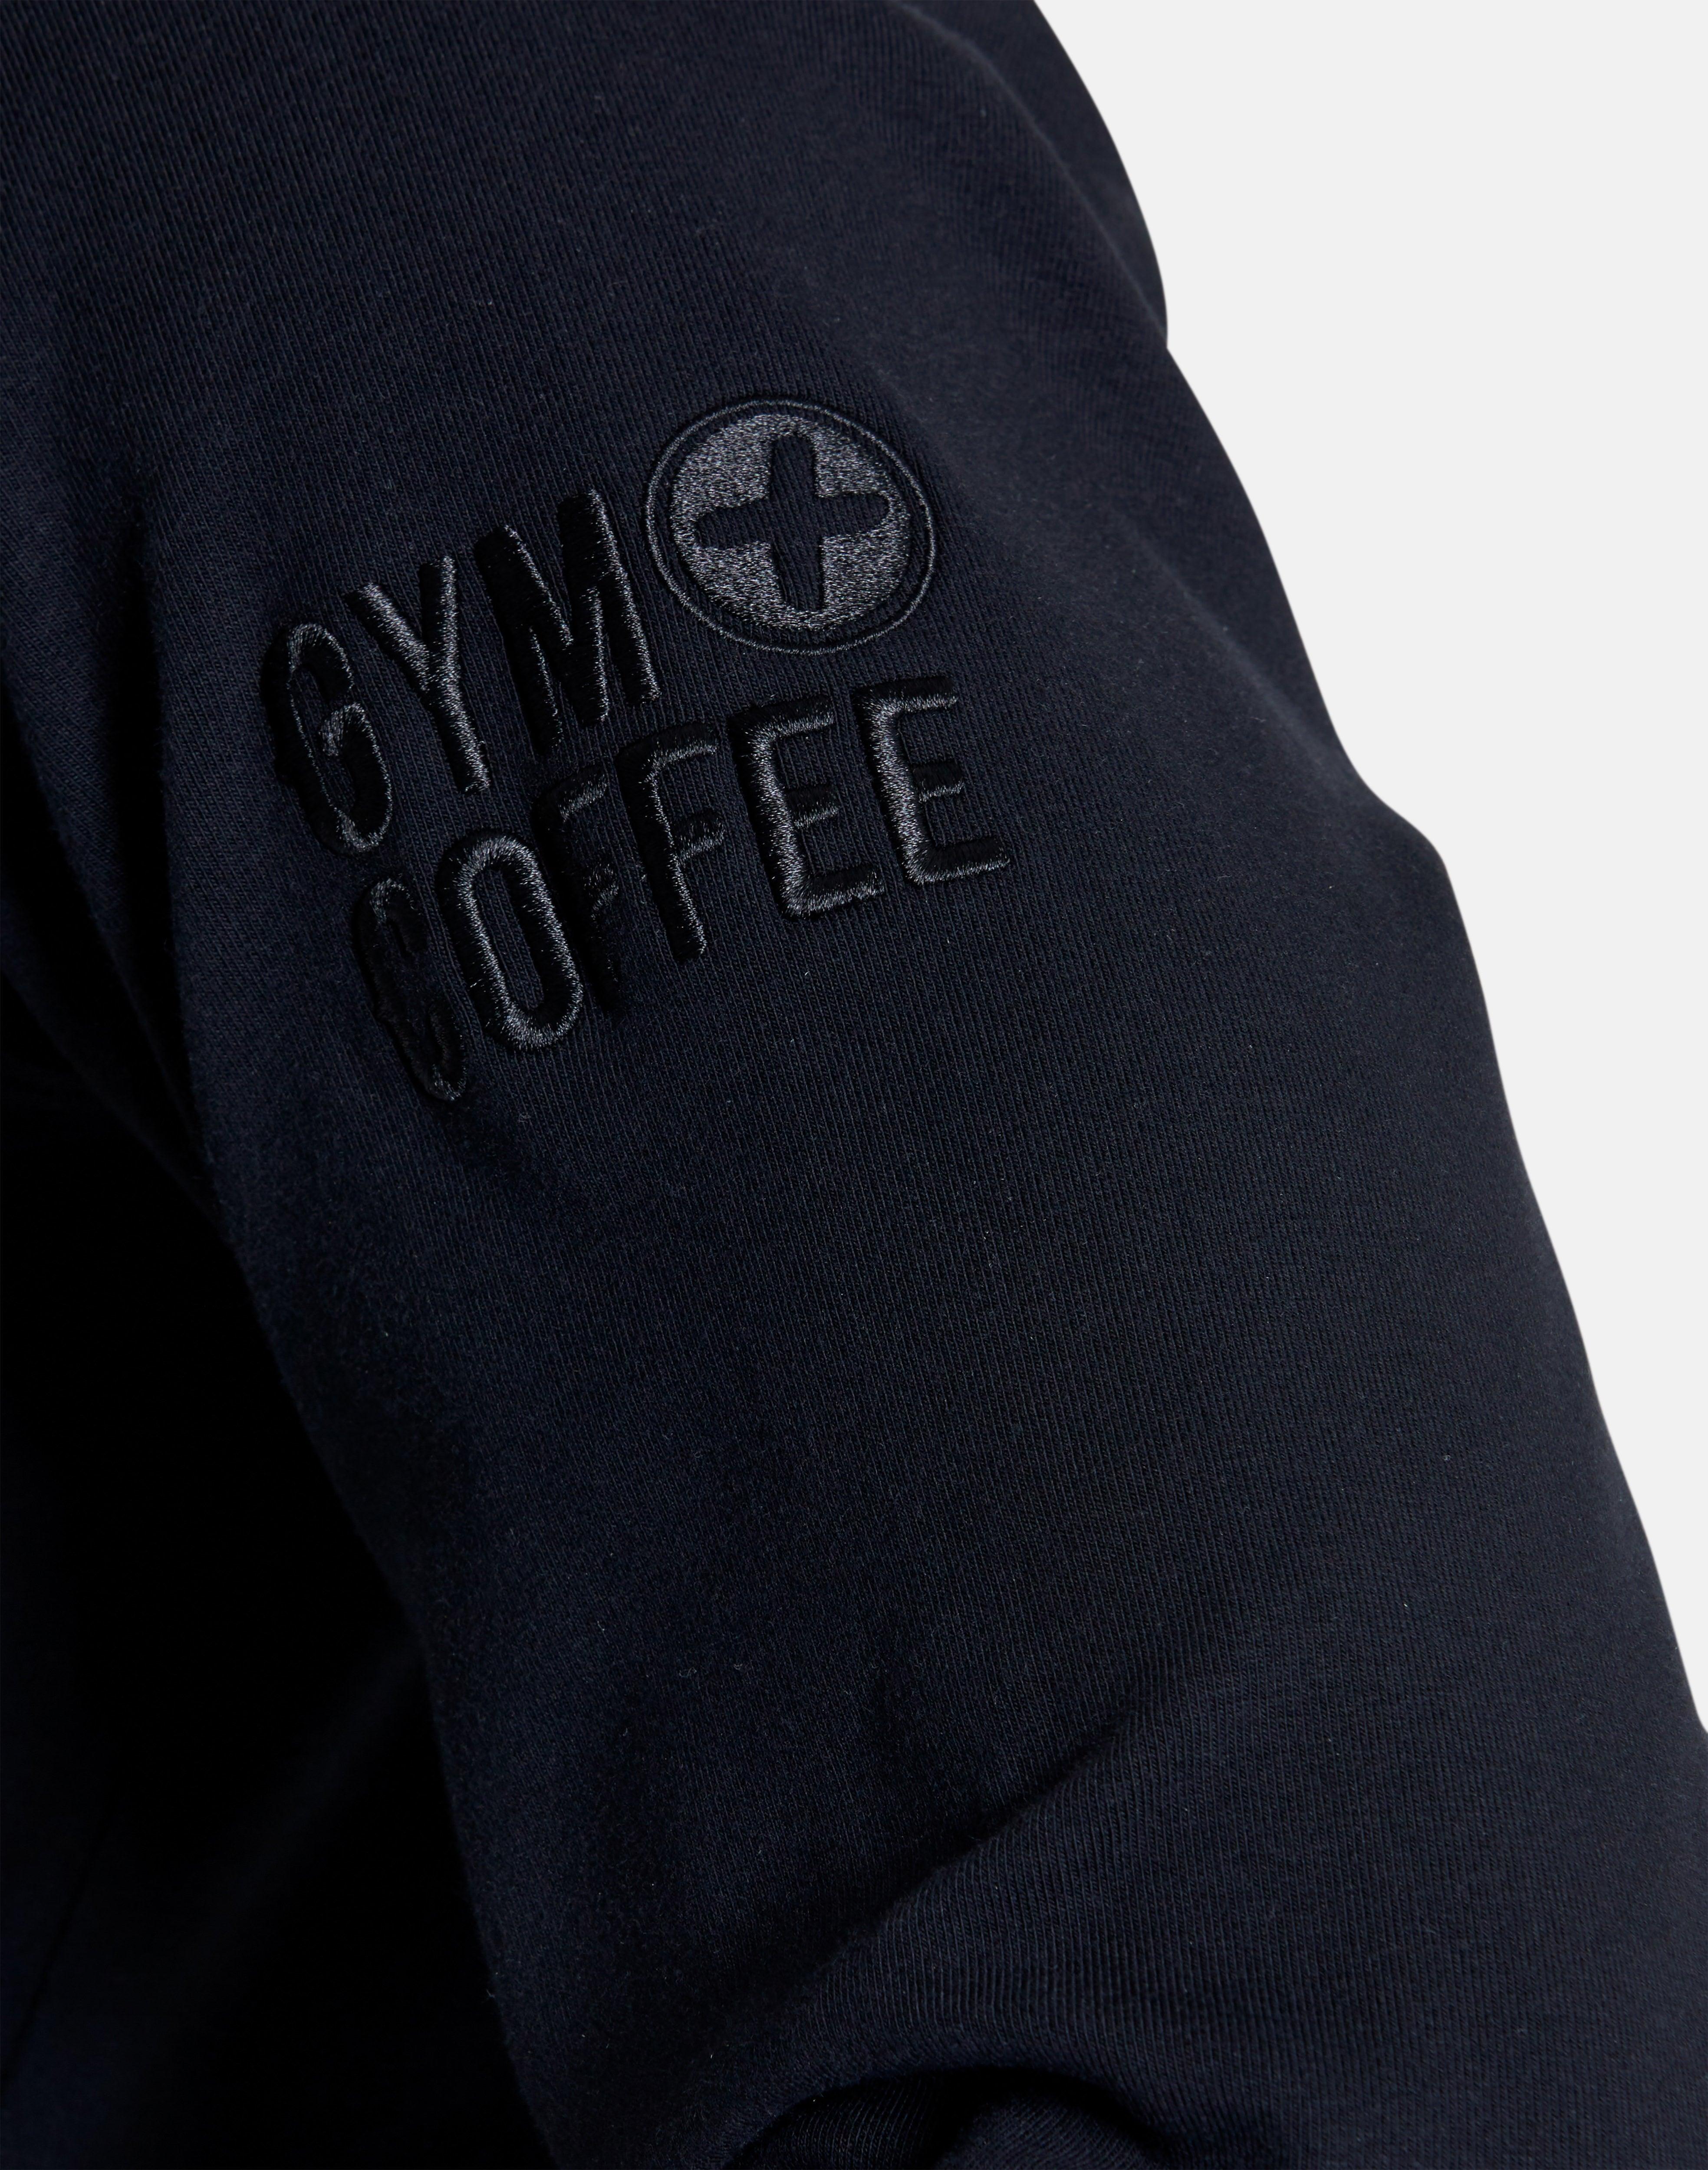 Chill Half Zip in Black - Sweatshirts - Gym+Coffee IE